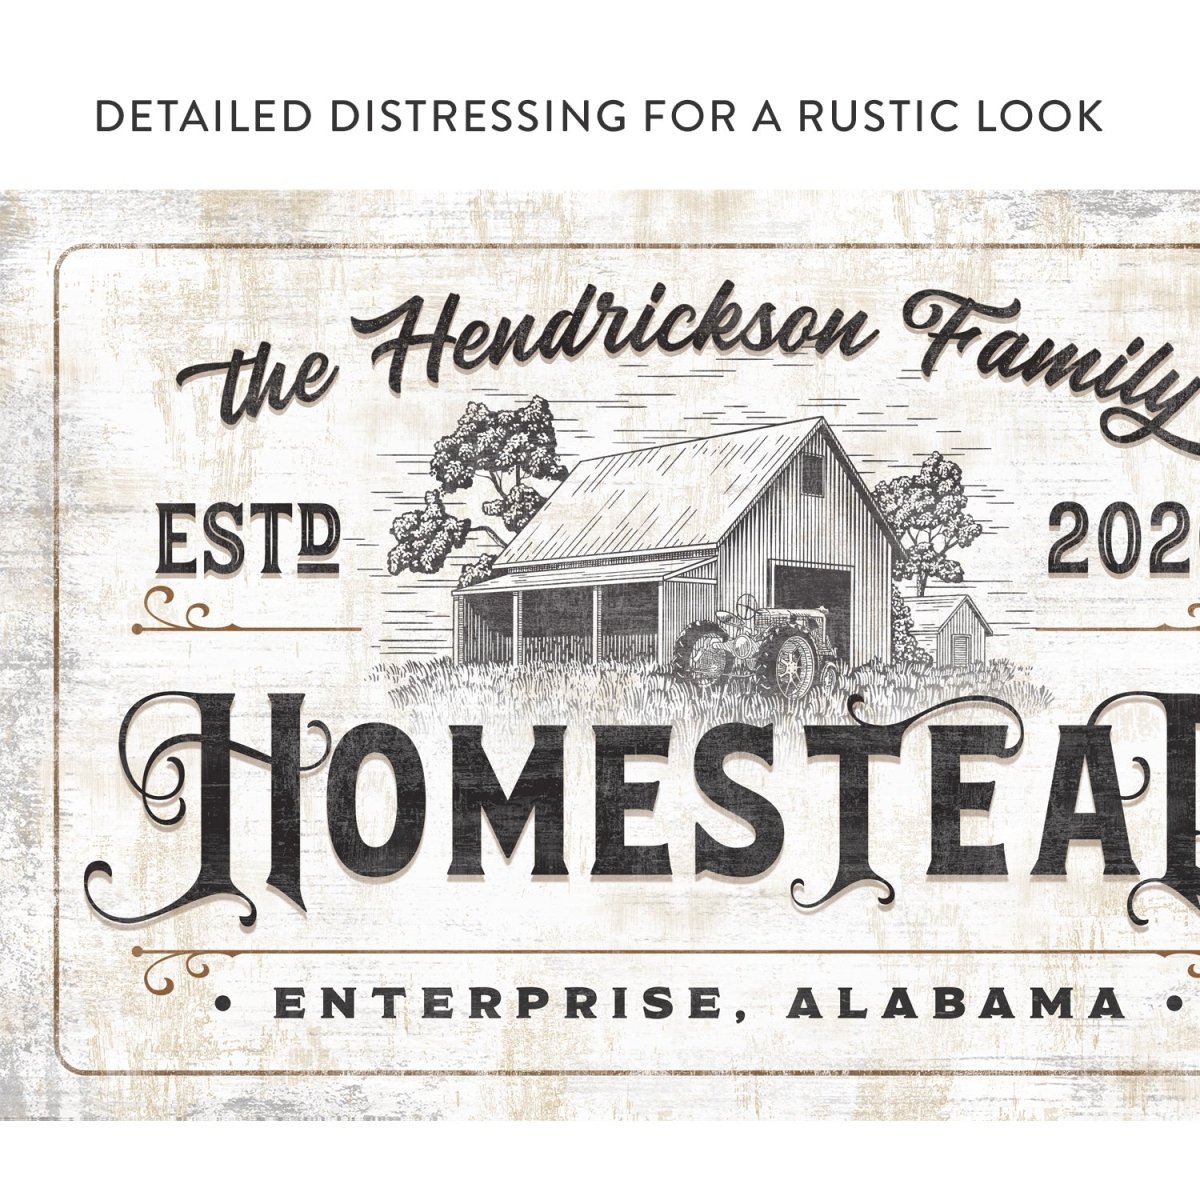 Personalized Farmhouse Homestead Sign freeshipping - Pretty Perfect Studio